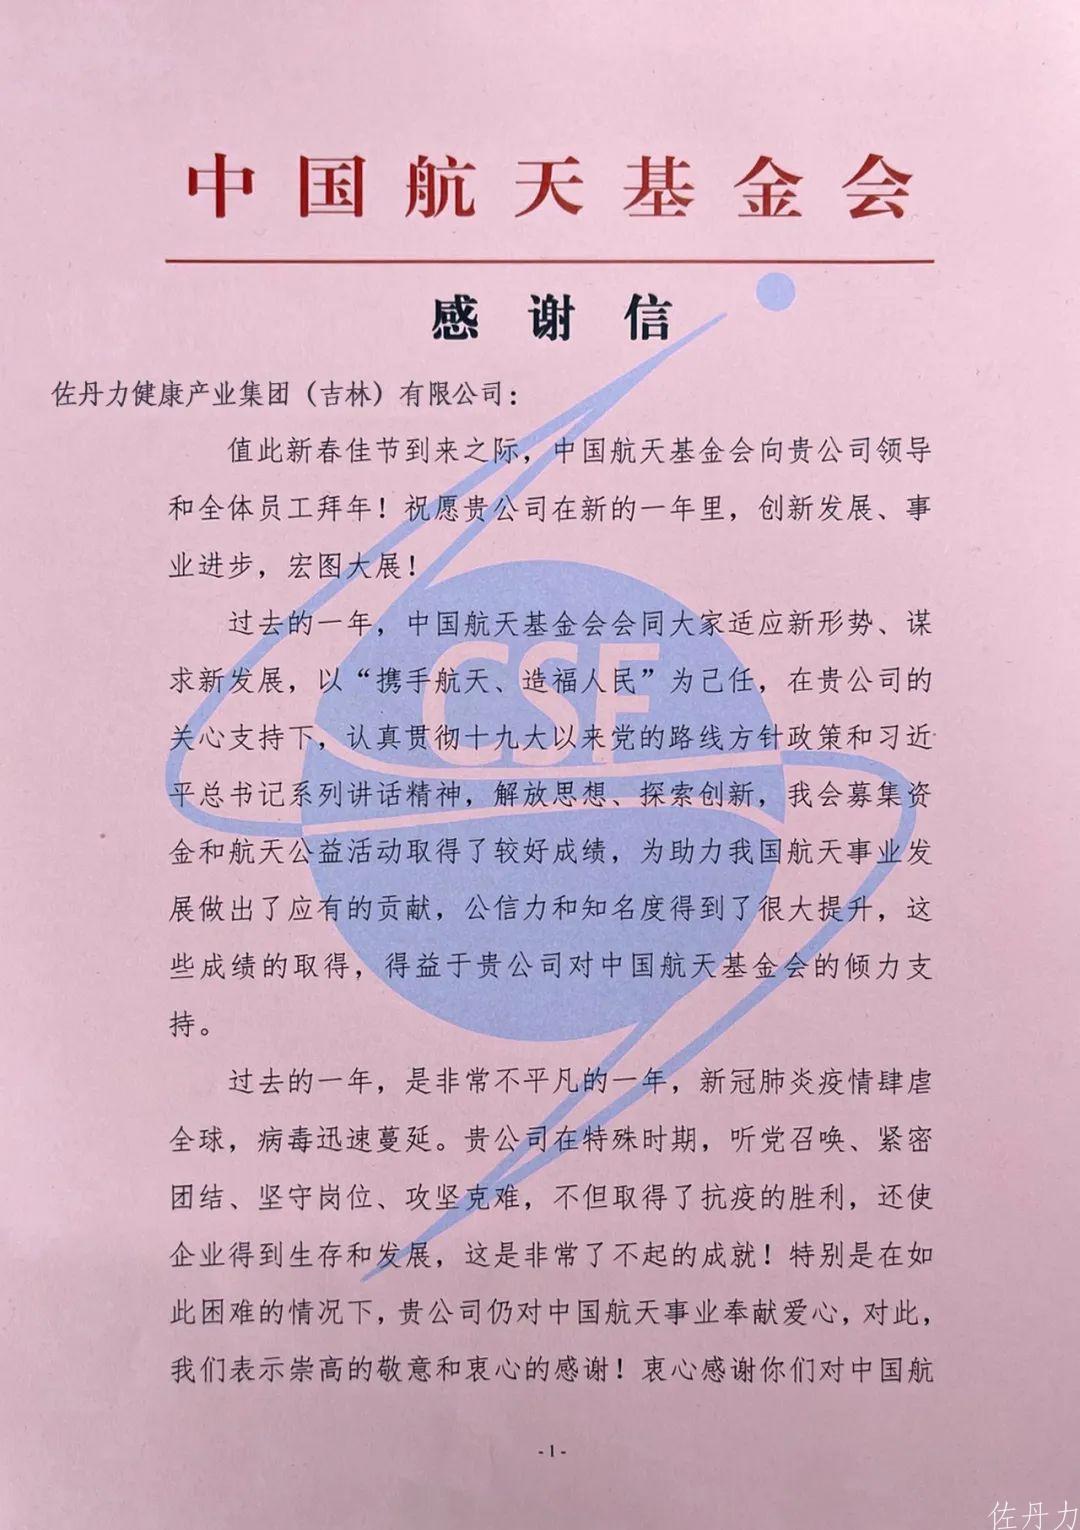 中国航天基金会给佐丹力集团发来感谢信